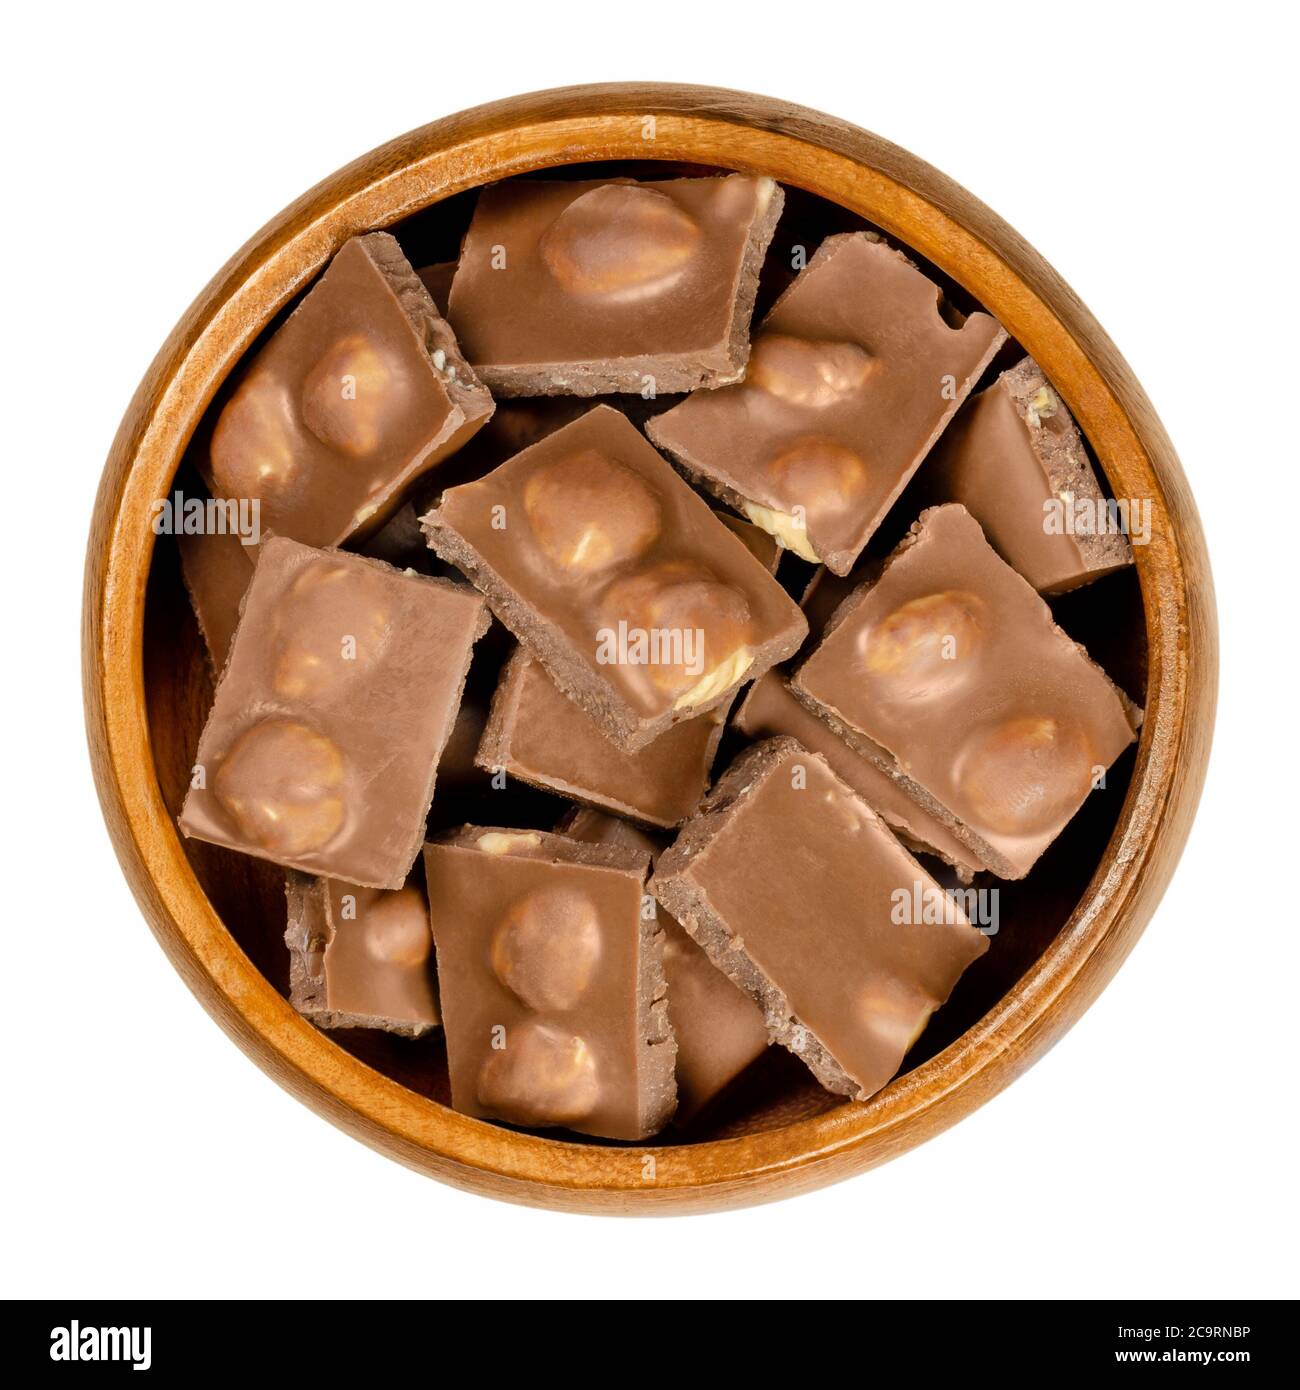 Cioccolato al latte di nocciola, barrette spezzate a pezzi, in ciotola di legno. Piccoli segmenti di bar caramella. Cioccolato al latte con nocciole tostate intere. Foto Stock